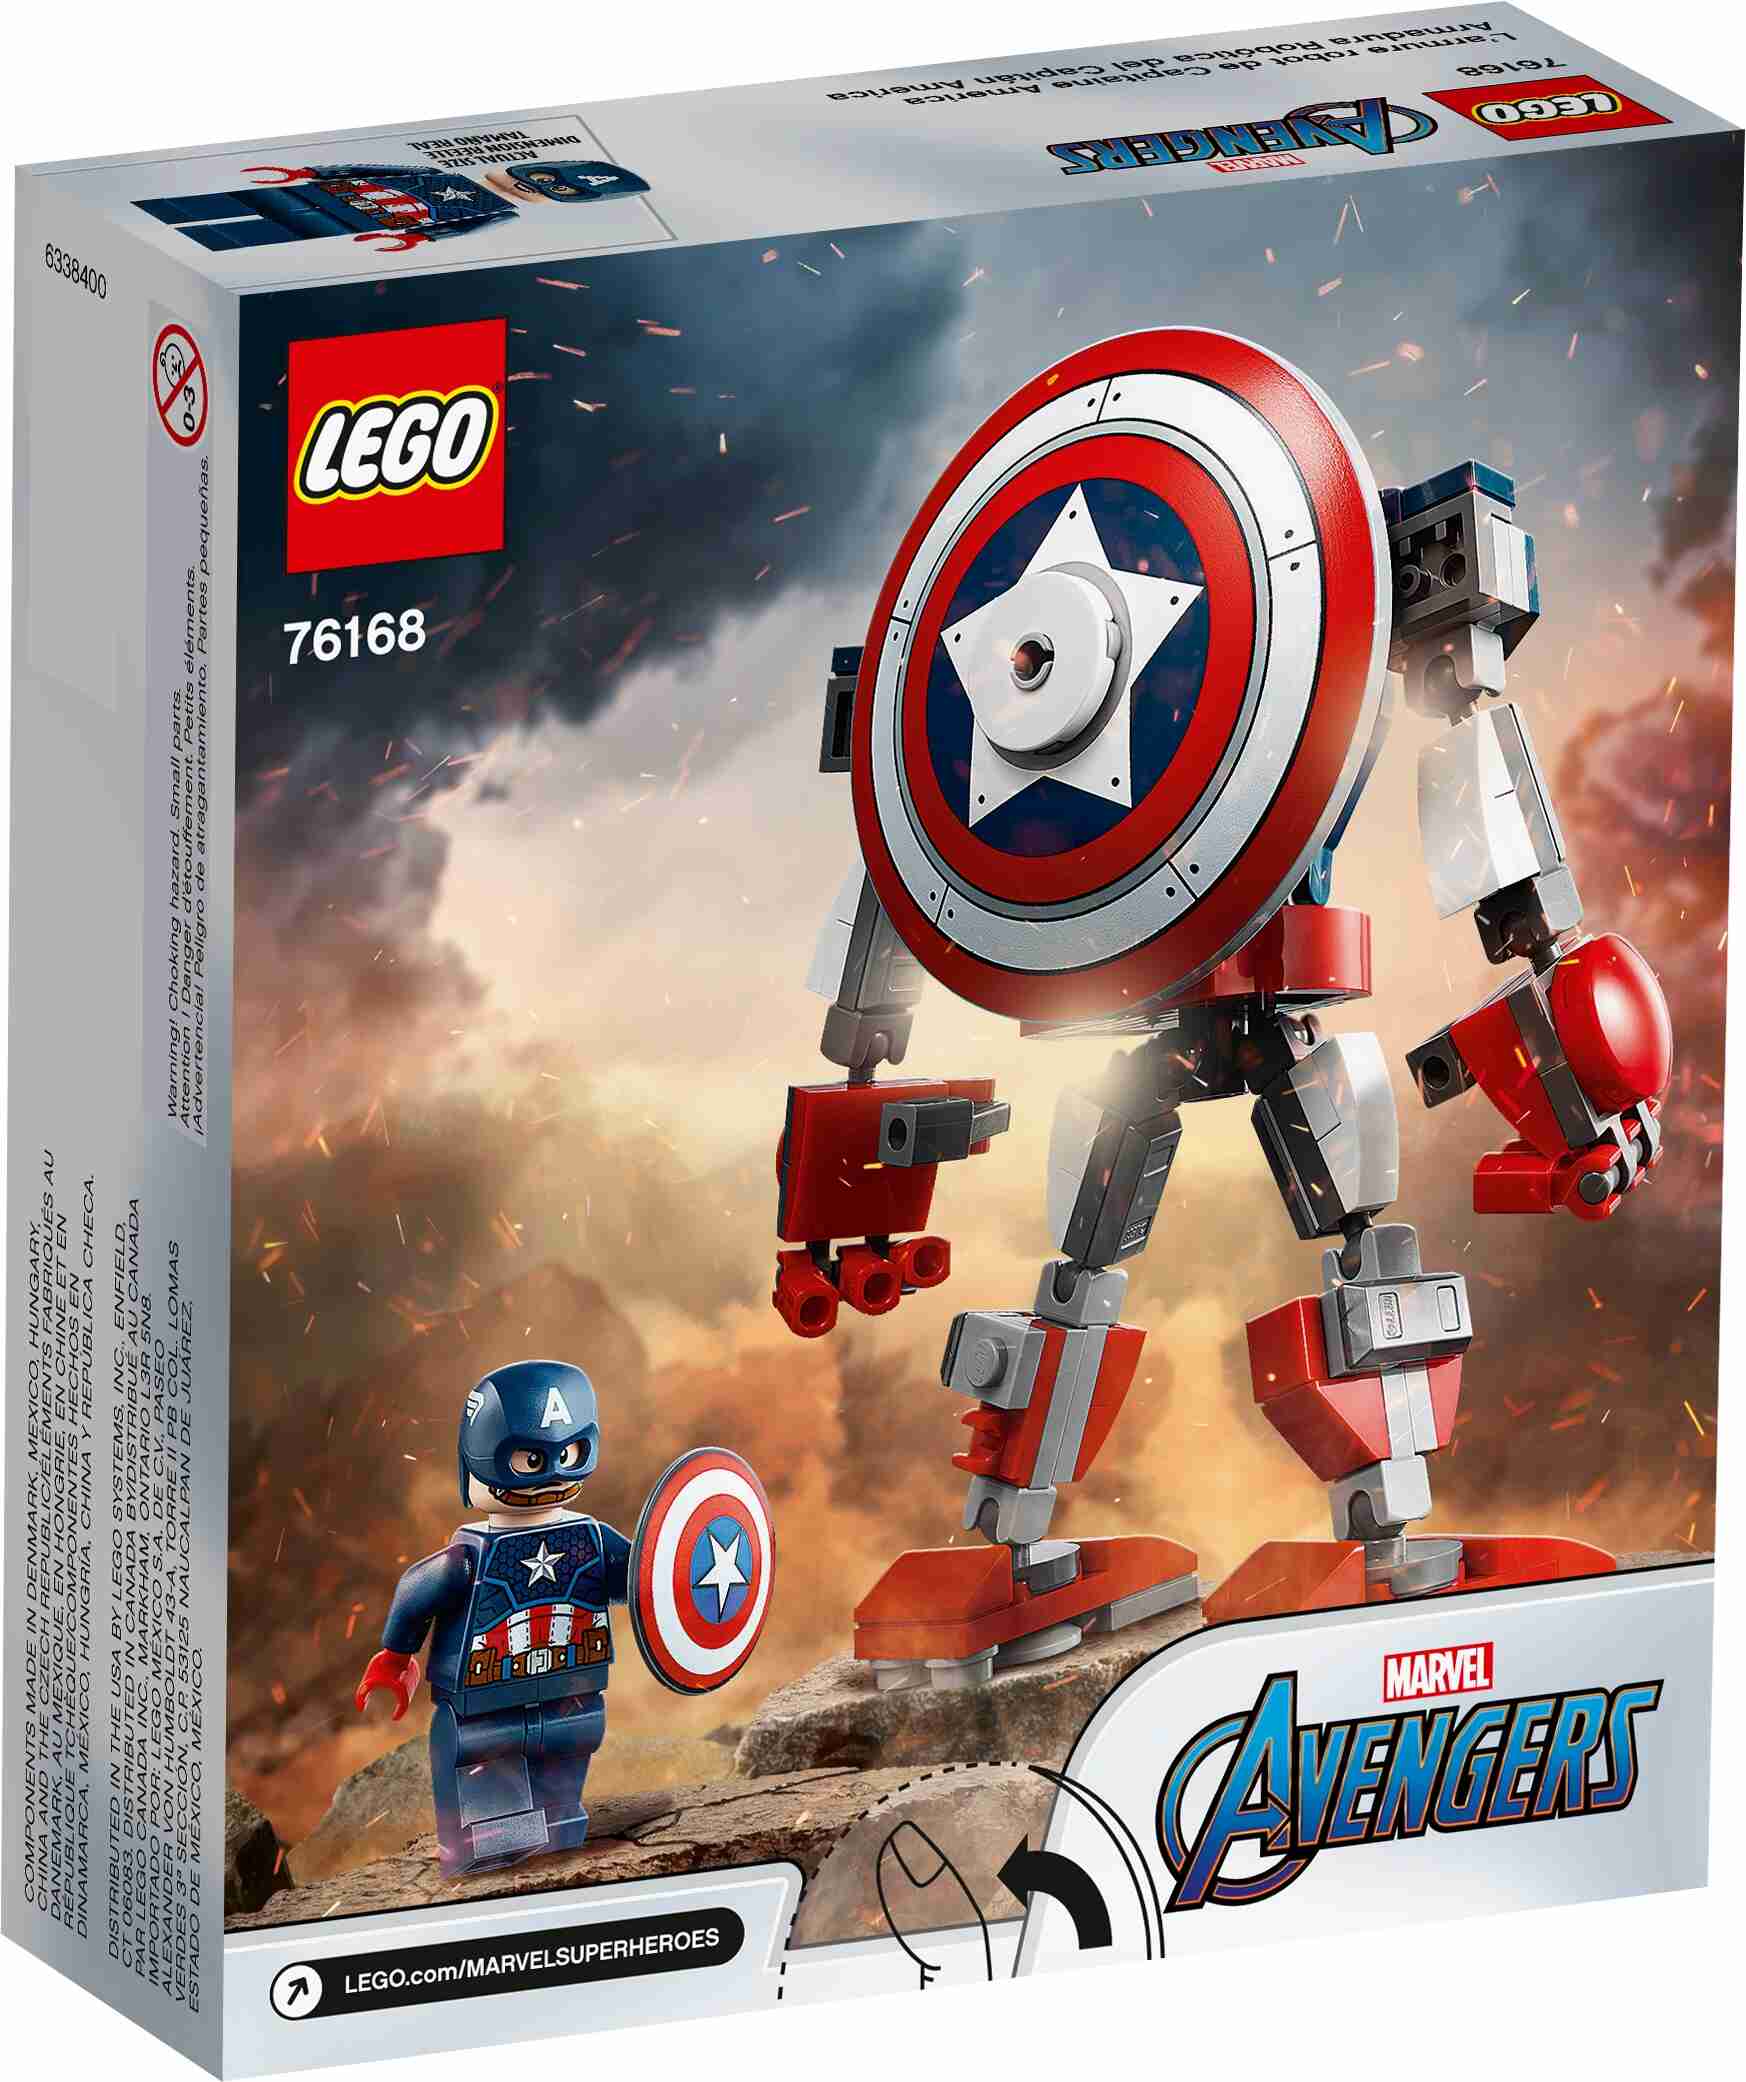 LEGO 76168 Marvel Avengers Captain America Mech Set inkl. Minifigur